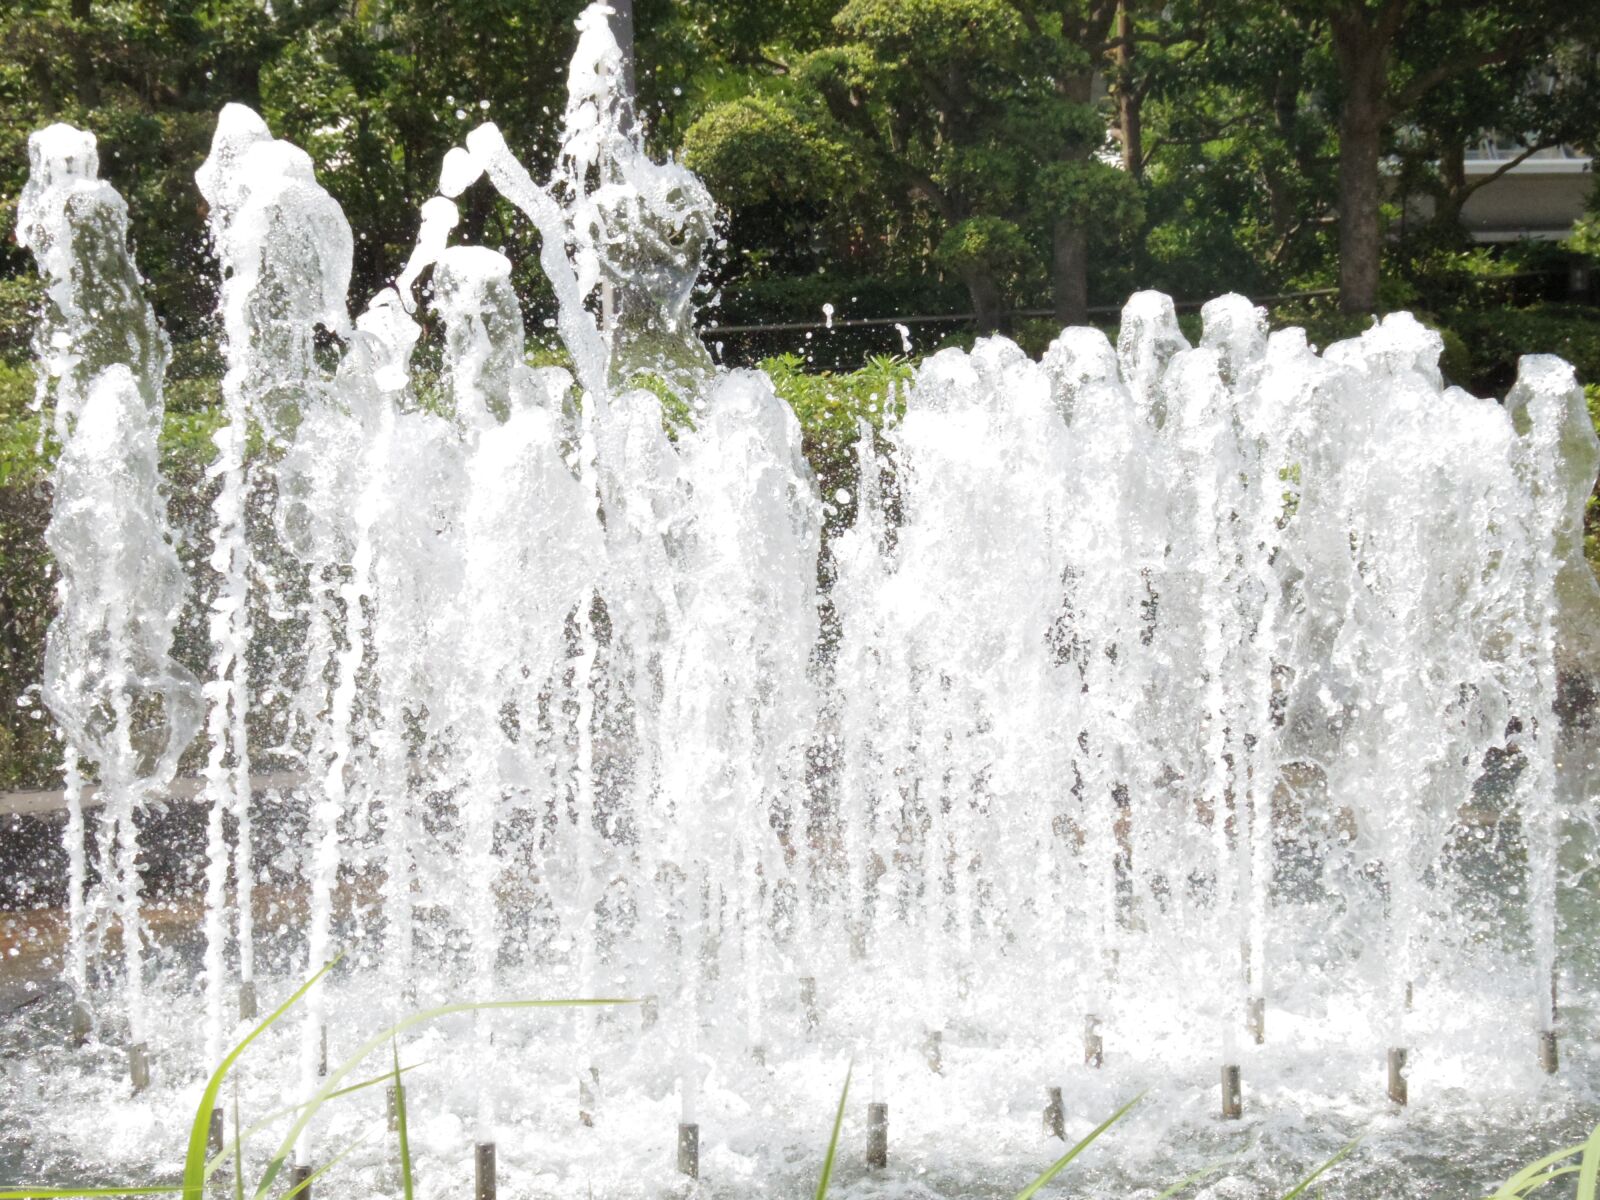 Pentax Q7 sample photo. Fountain, park, garden photography